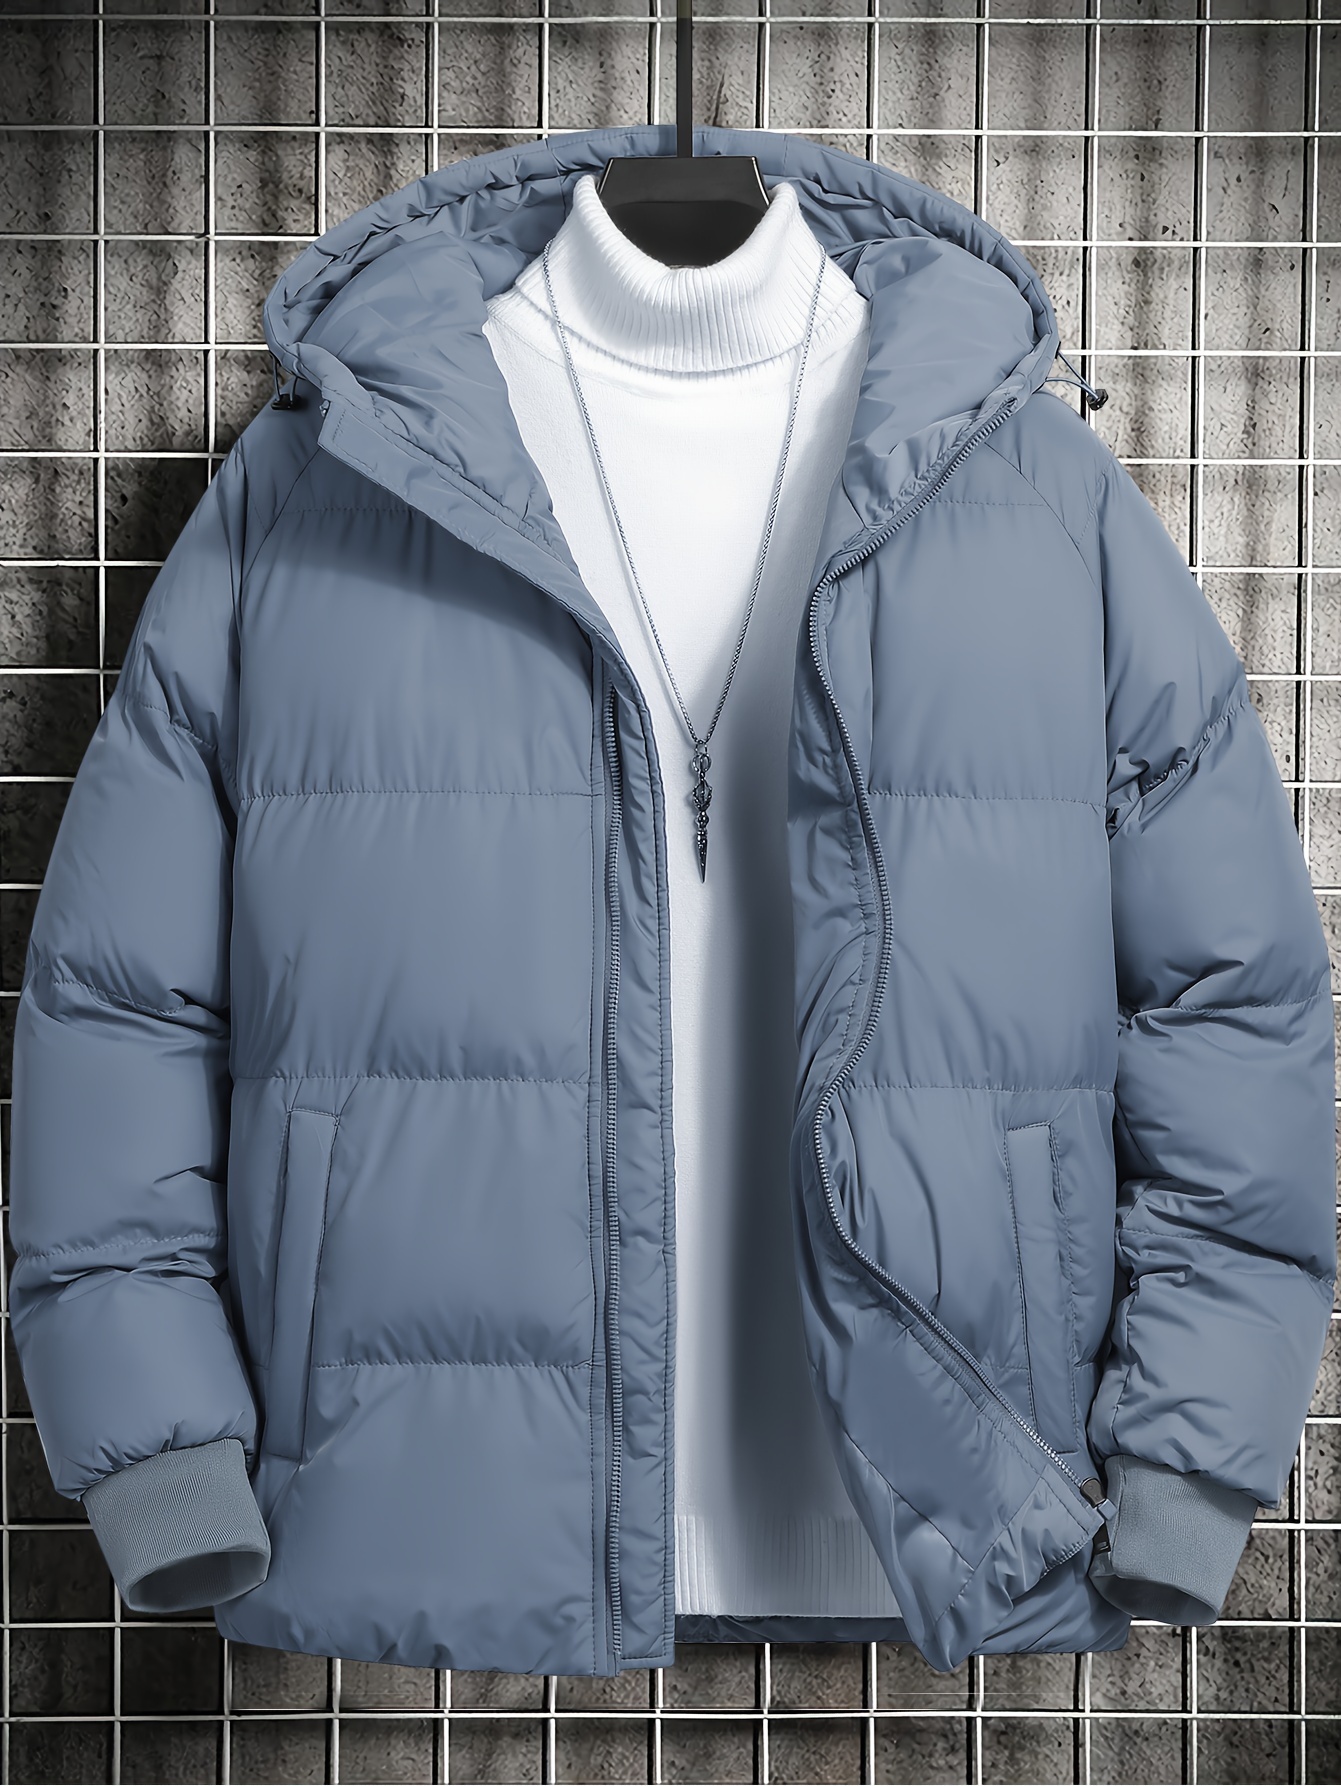 メンズカジュアル暖かいフード付きコート 秋冬用ジップアップパファー